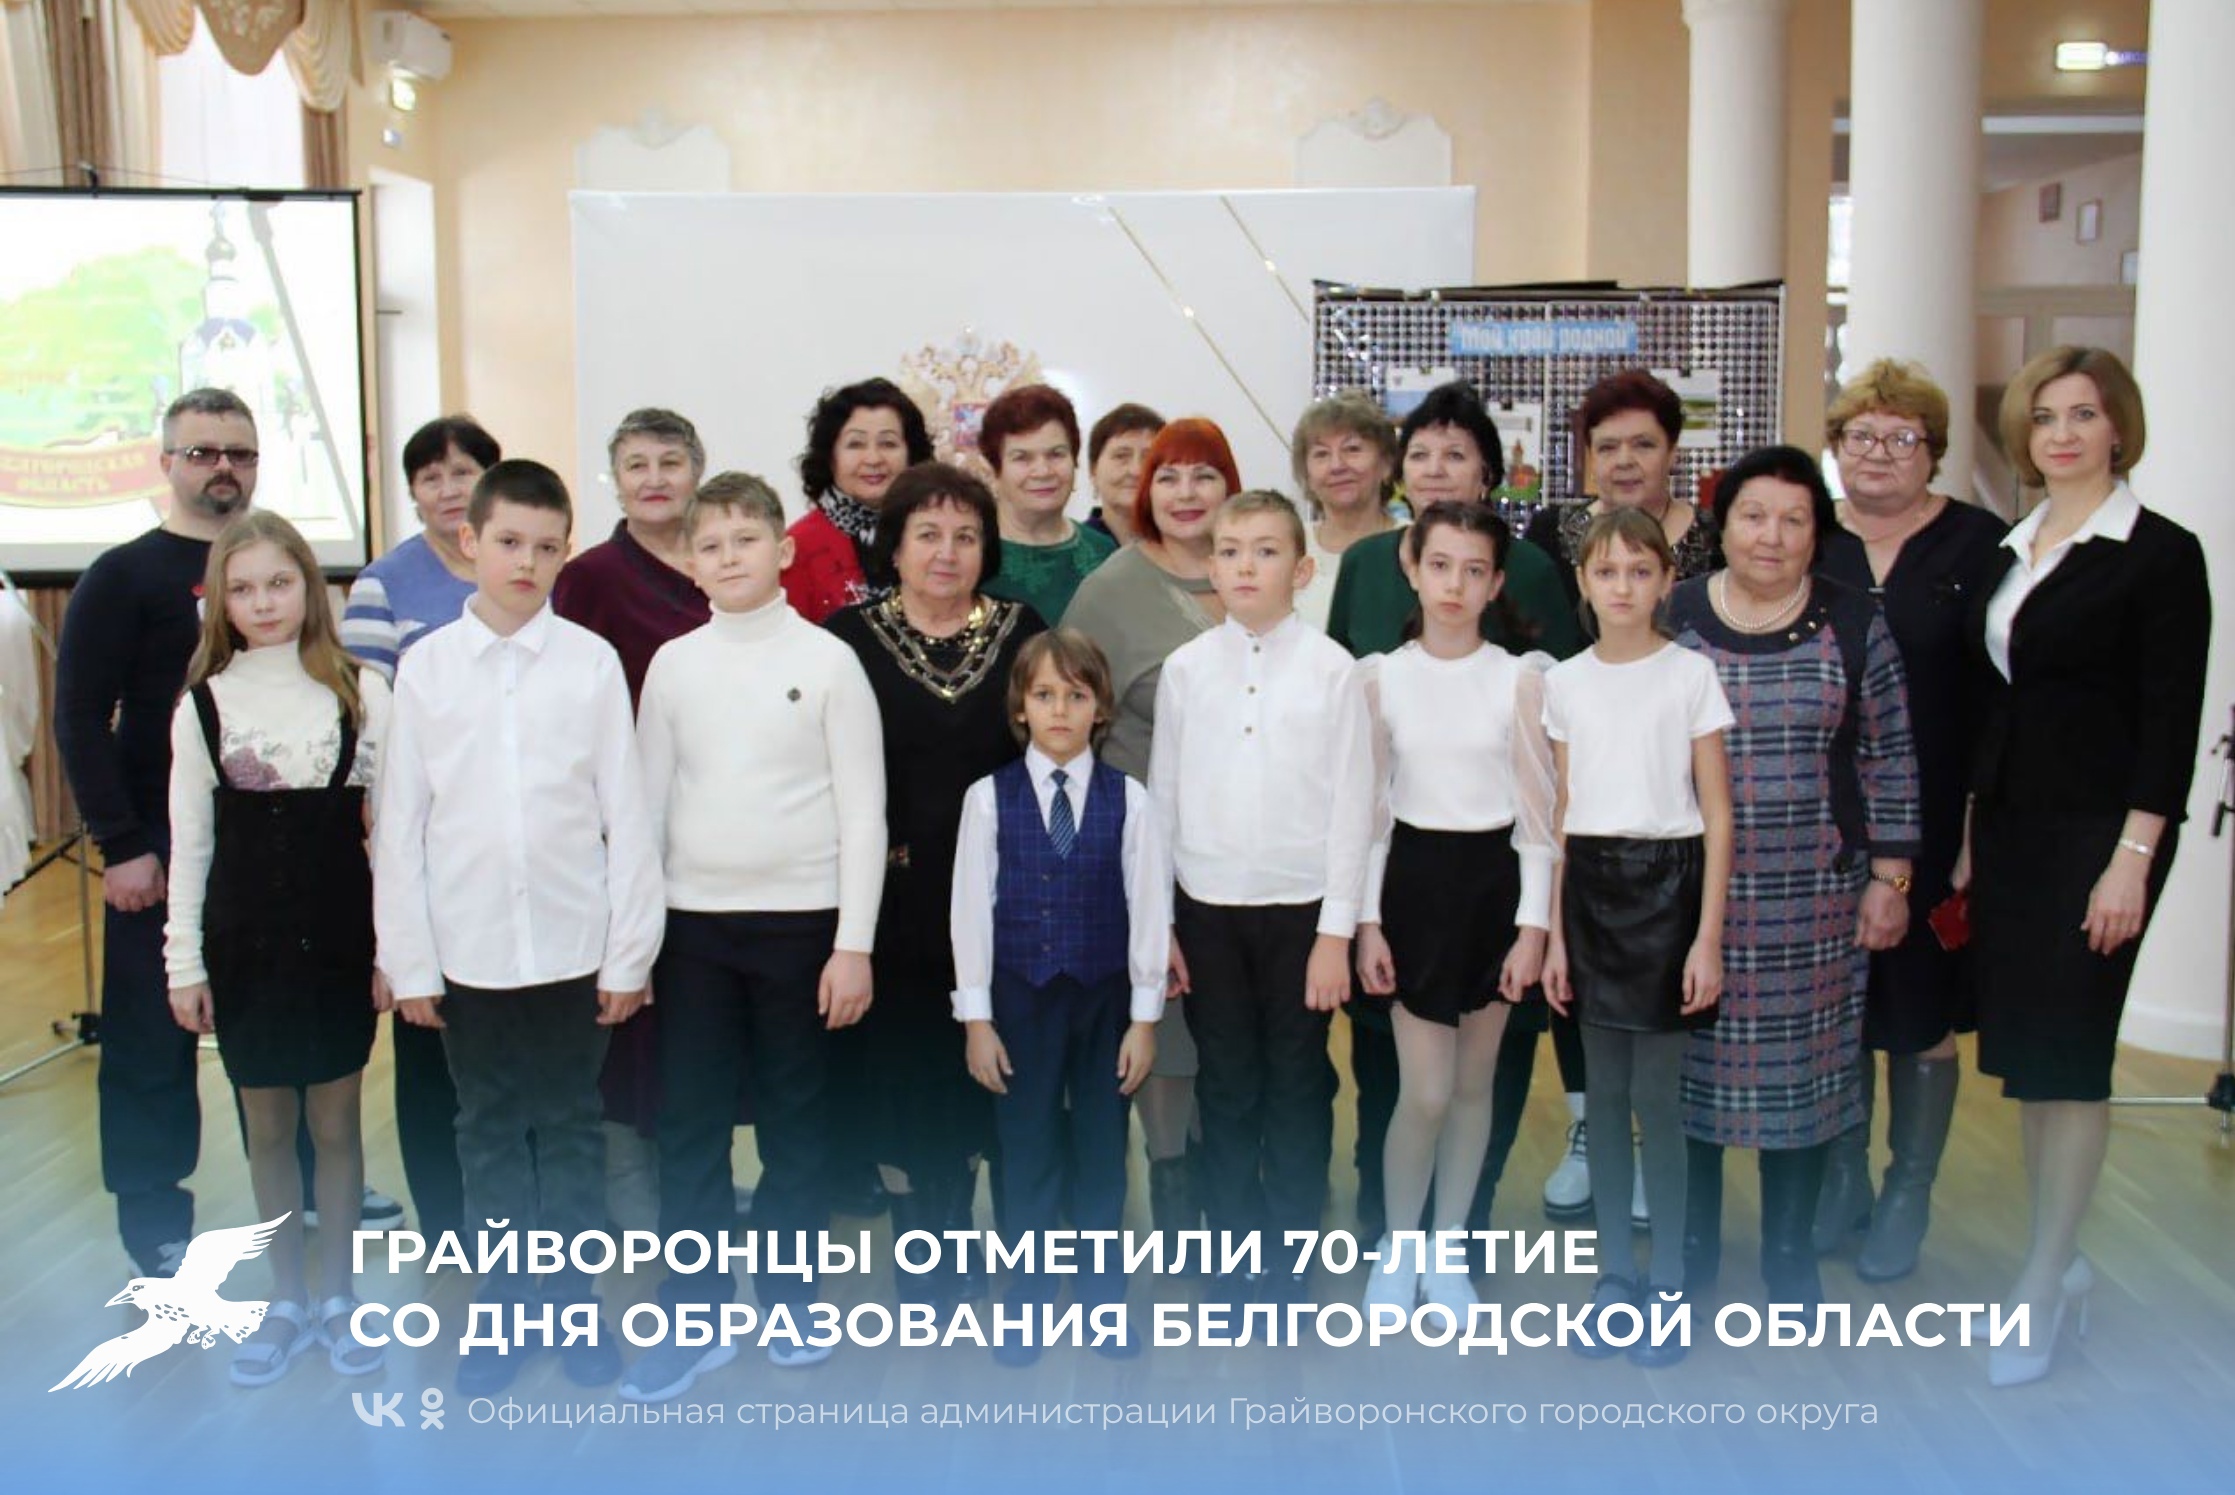 Грайворонцы отметили 70-летие со дня образования Белгородской области 💫.